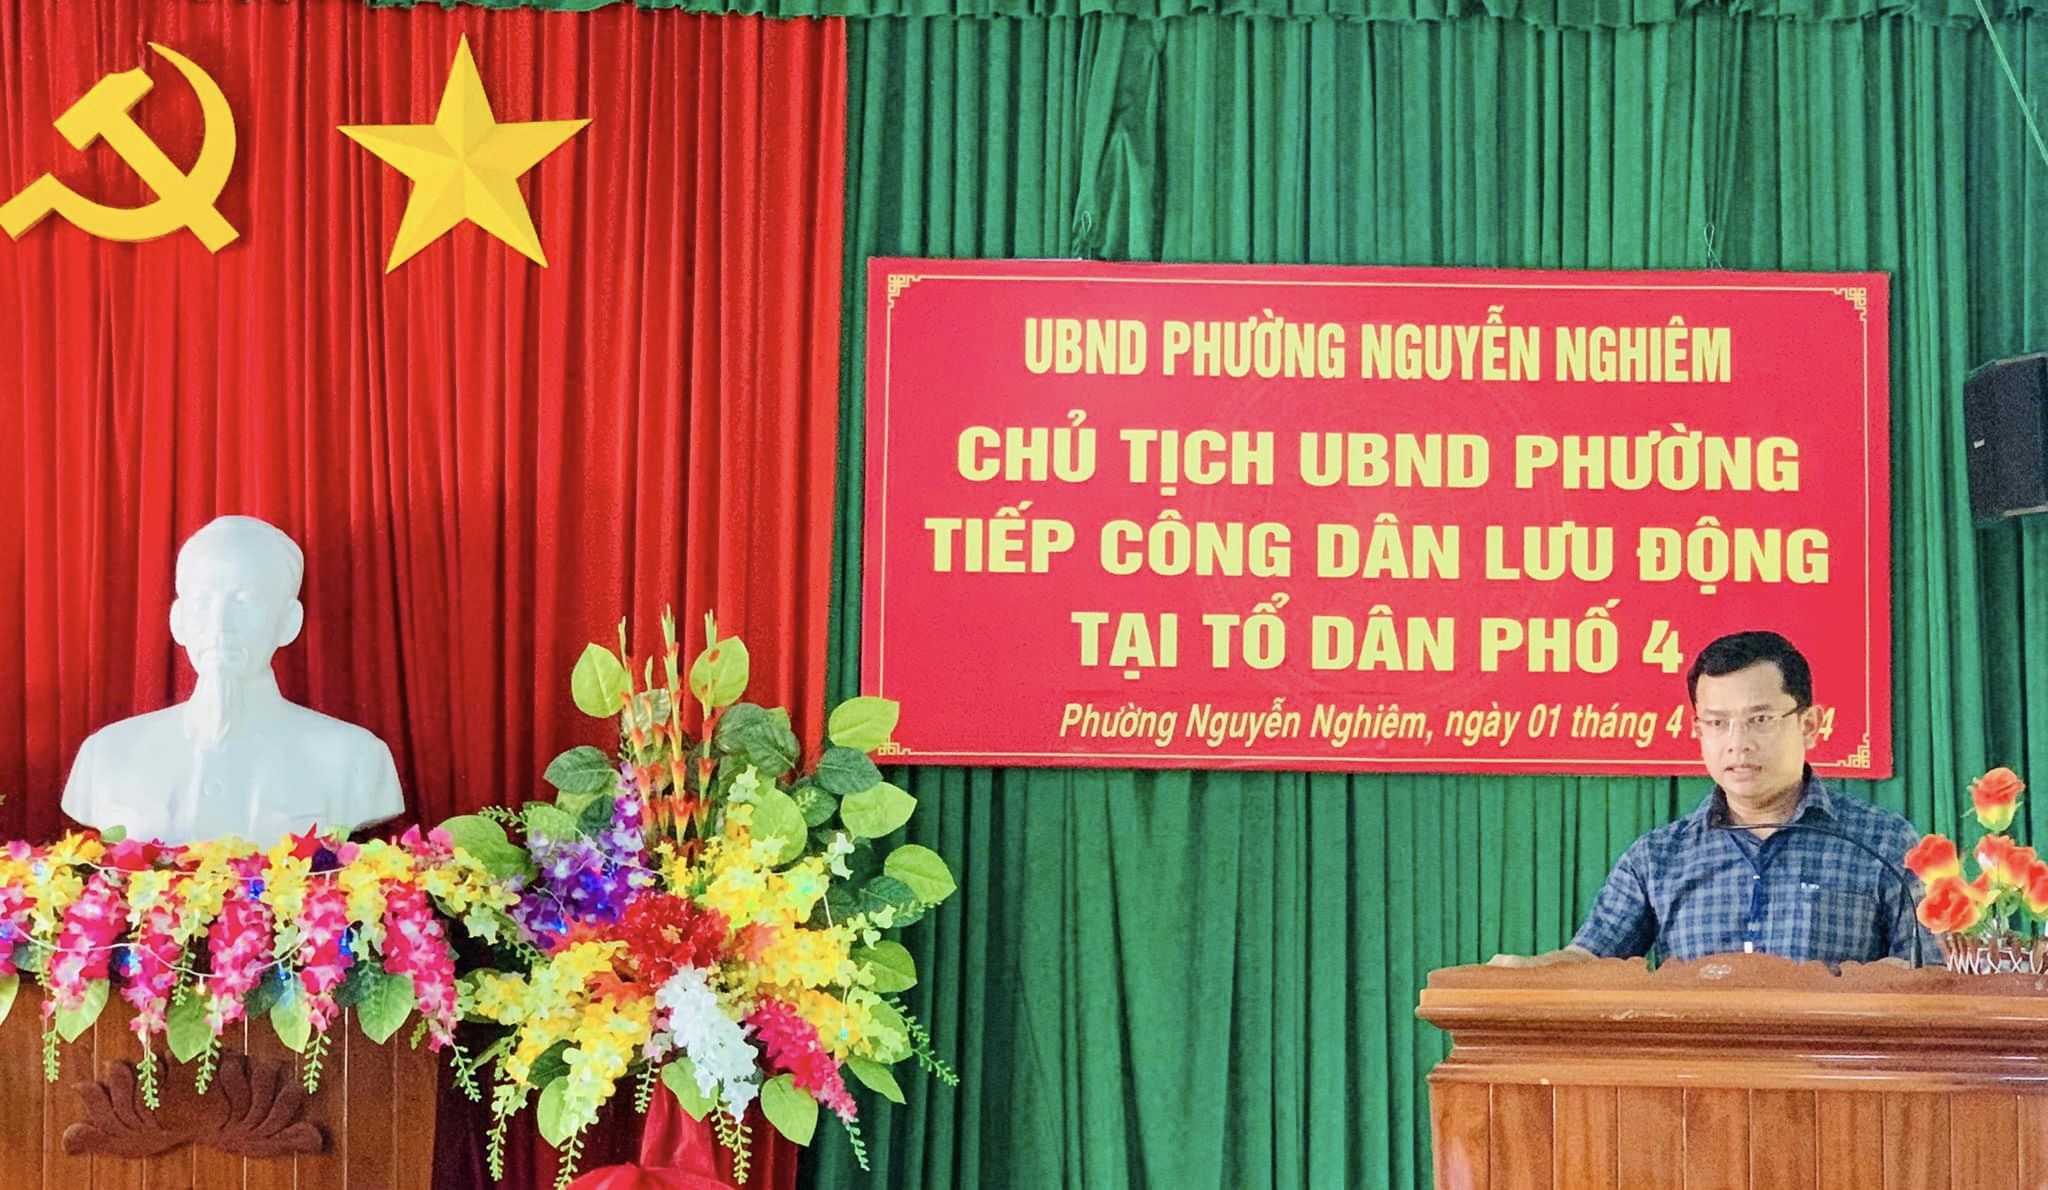 Chủ tịch UBND Phường Nguyễn Nghiêm tiếp công dân lưu động tại TDP4